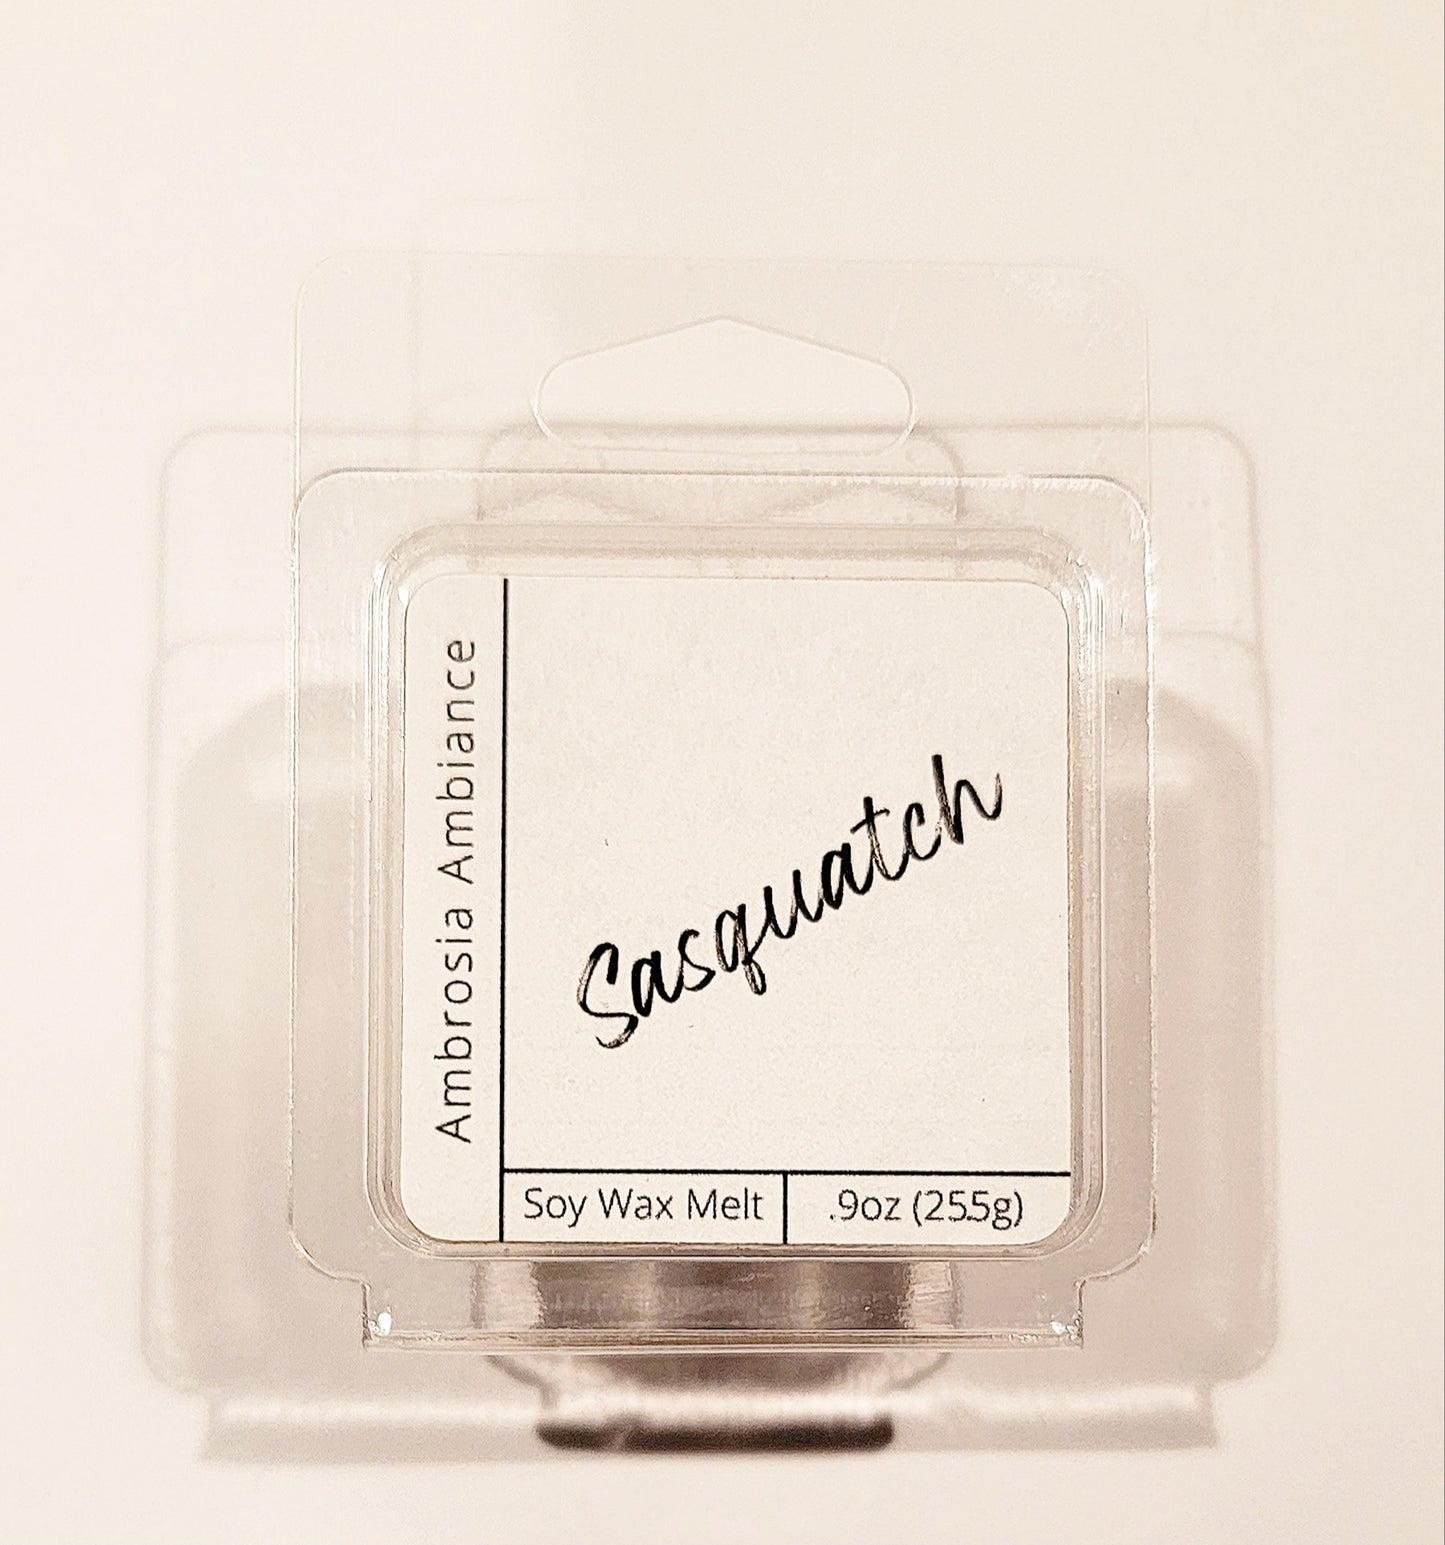 Sasquatch | Soy Wax Melt